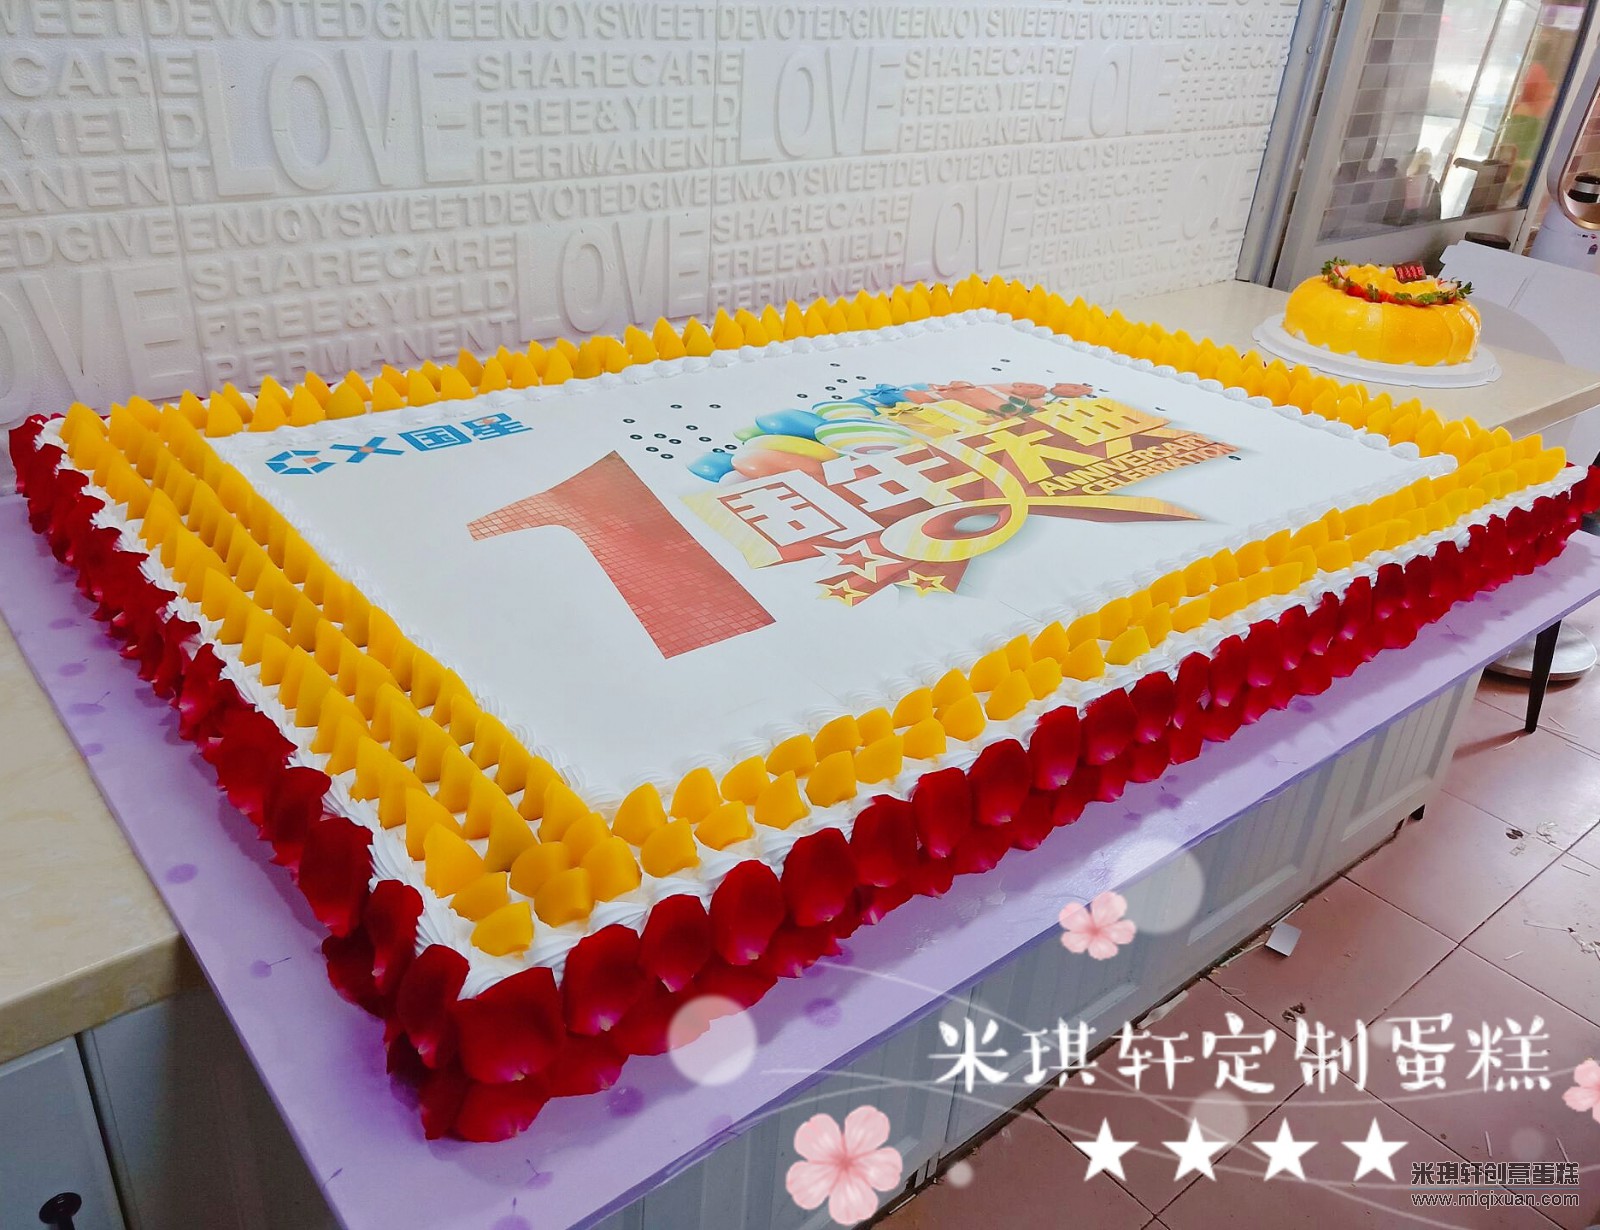 【3层60大寿蛋糕】北京生日蛋糕预订 祝寿蛋糕 多层寿桃蛋糕配送_唯美dangao巧克力